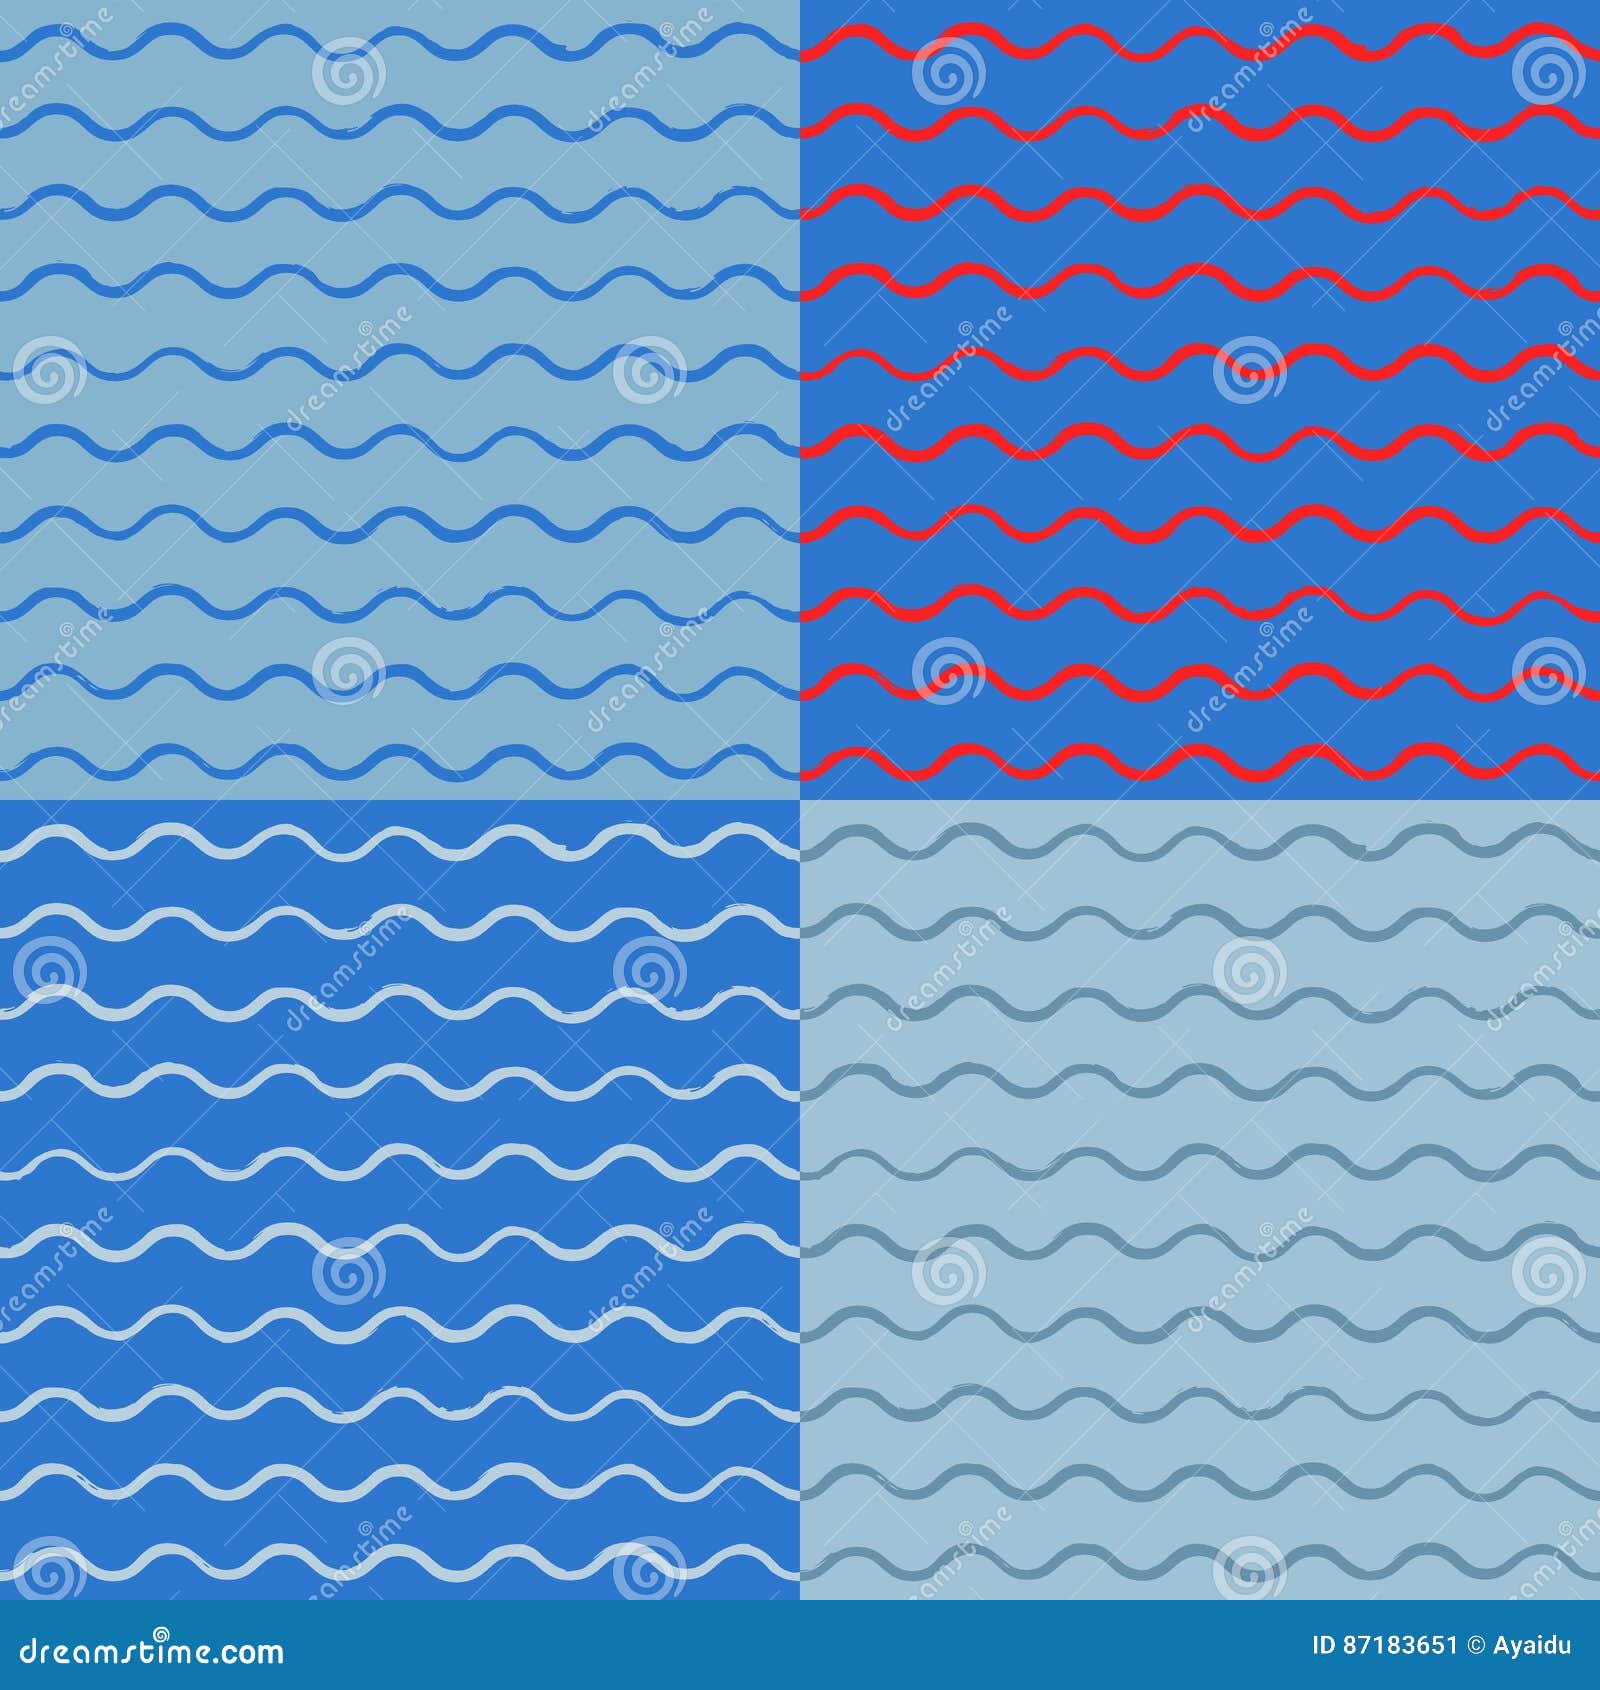 Vectorkunstinzameling van eenvoudige naadloze achtergronden met hand-drawn golven op een blauwe achtergrond Voor de kaarten van de ontwerpgroet, textiel, ornamenten in een zeevaartthema